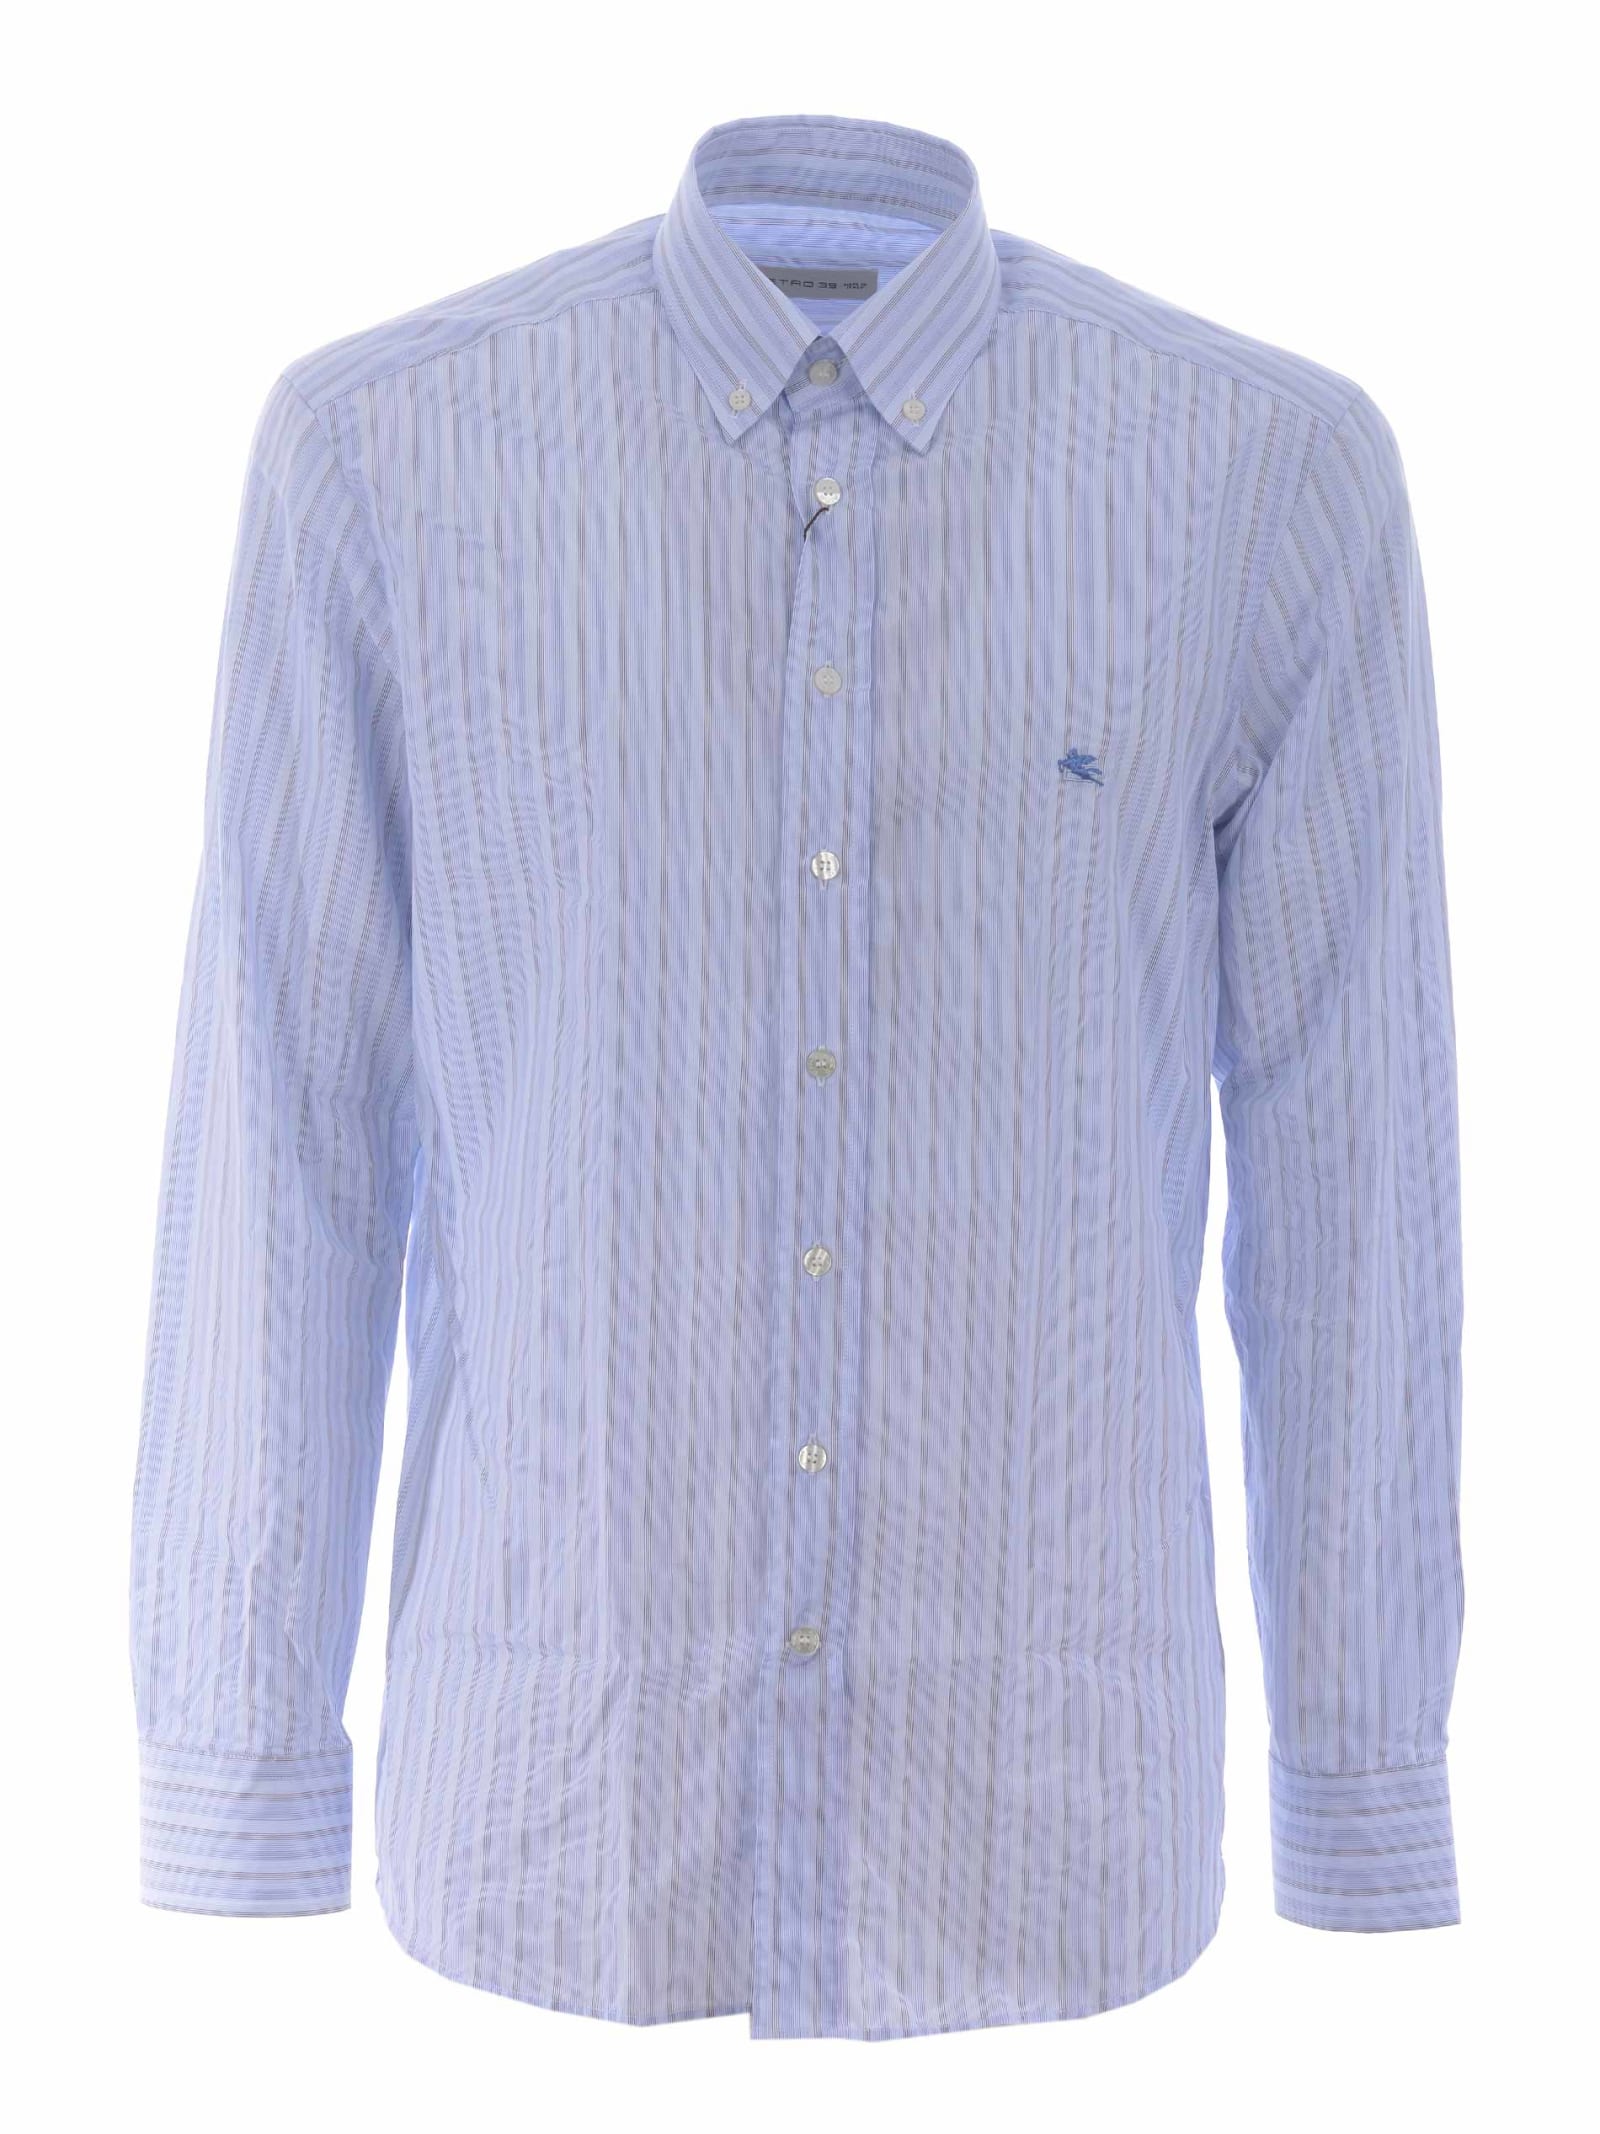 Etro Shirt regular Button Down In Striped Cotton